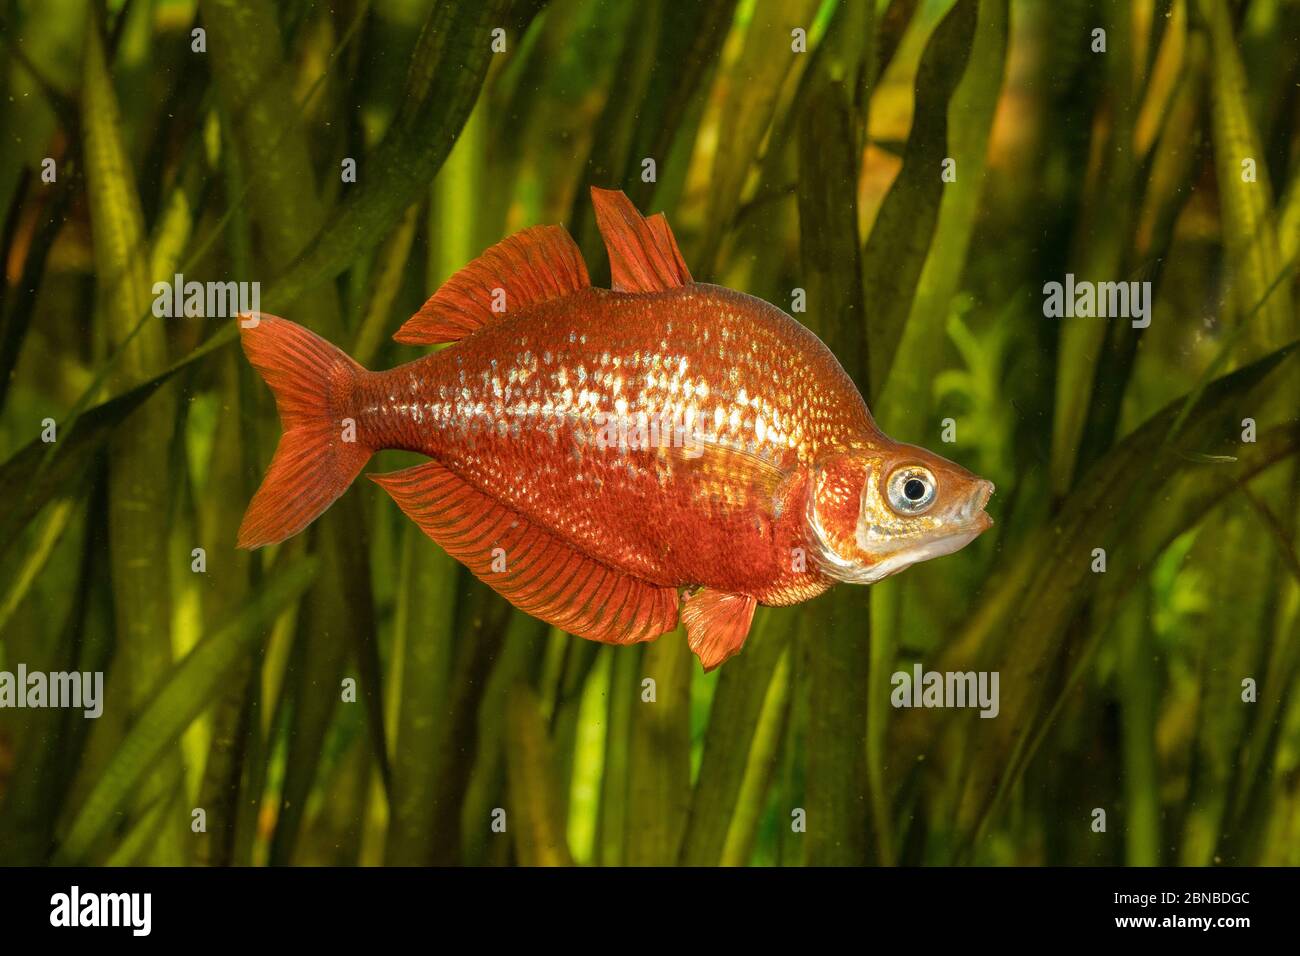 Poisson-pluie rouge, poisson-pluie rouge saumon, Nouvelle-Guinée Irian-Rouge Rainbowfish (Glosslepis incisus), comportement impressant, coloration nuptiale Banque D'Images